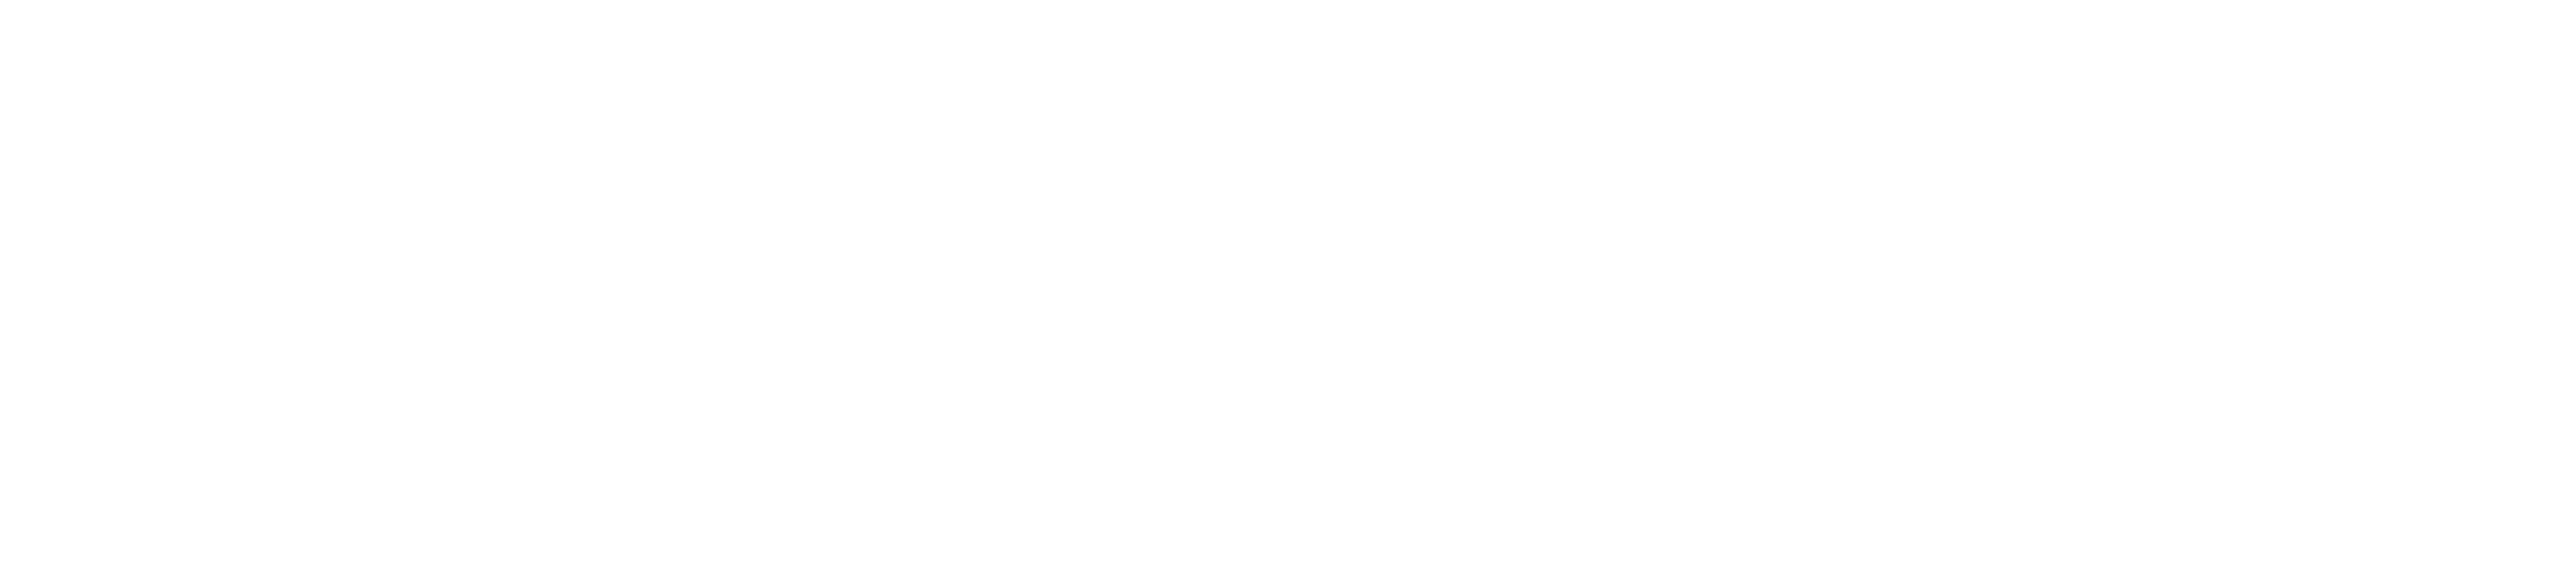 Spyder Footer Logo